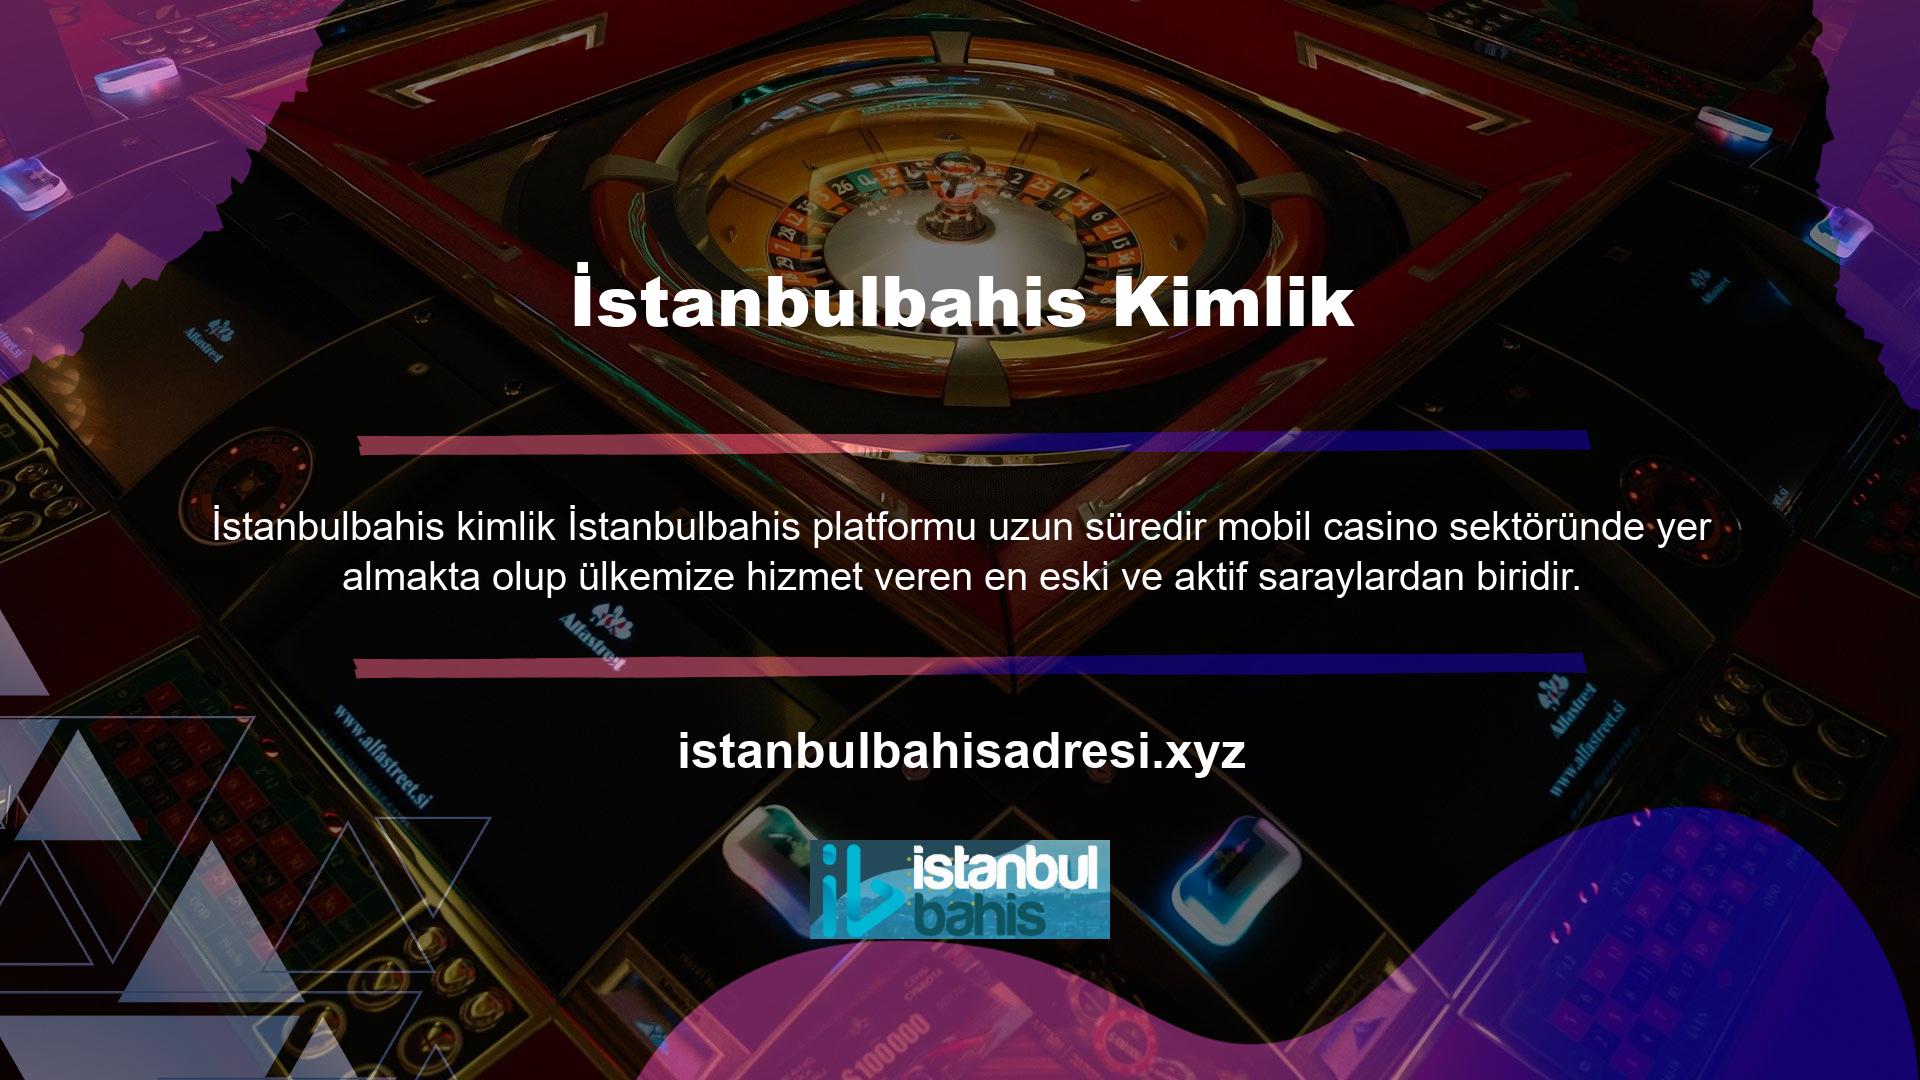 Giriş bahis sitesi olan İstanbulbahis, çoğu zaman kullanıcıları memnun eden reklam kampanyaları ile geniş bir yelpazede avantajlar sunan profesyonel bir sitedir